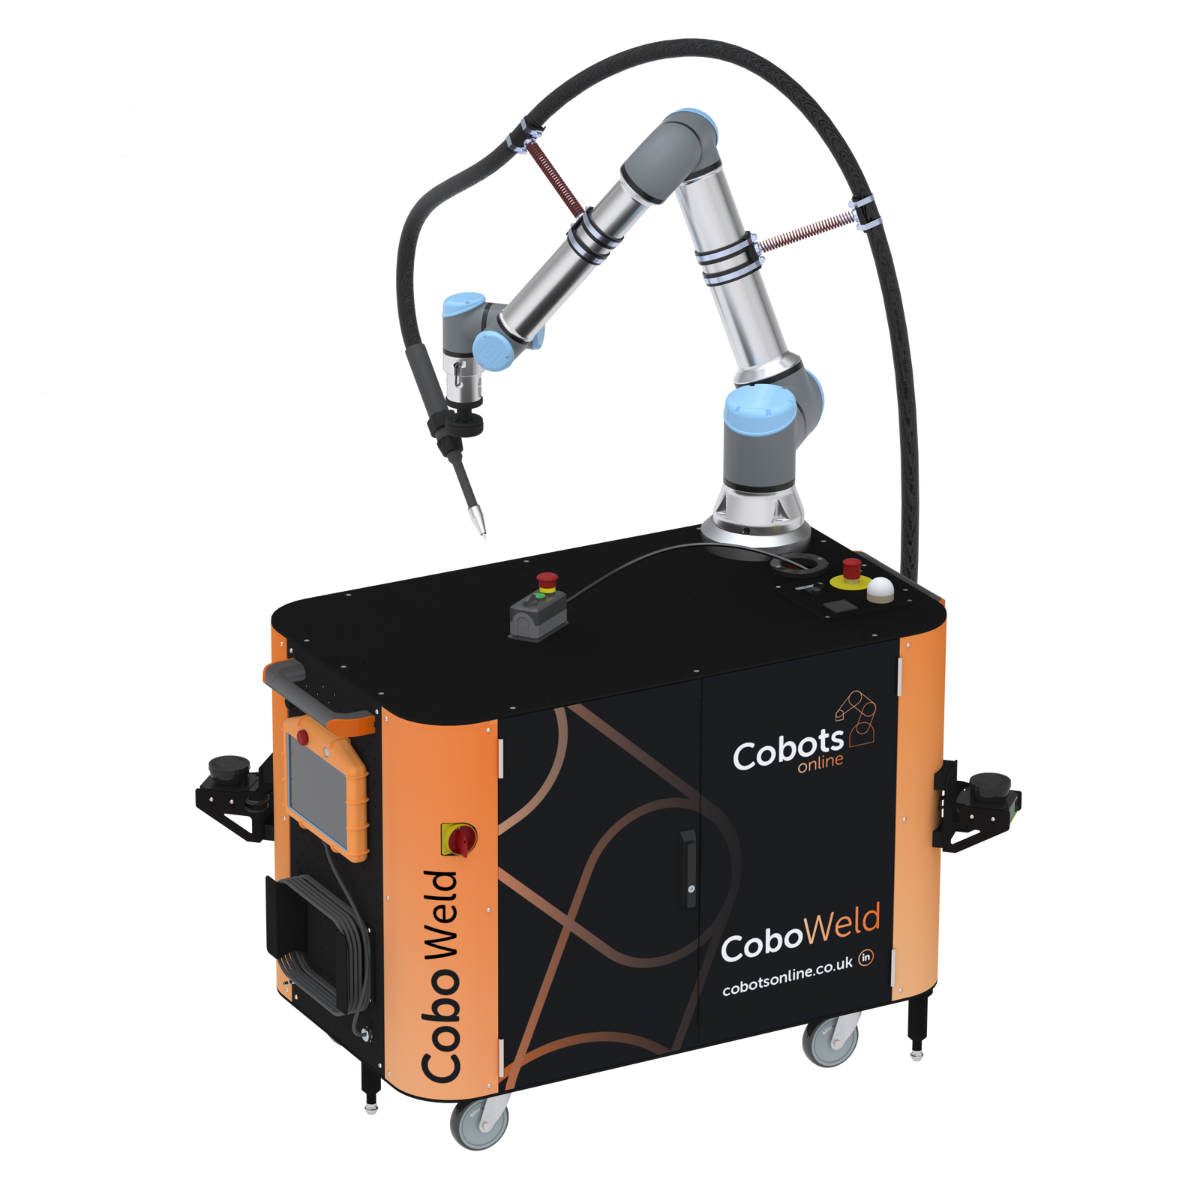 CoboWeld Mobile cobot solution